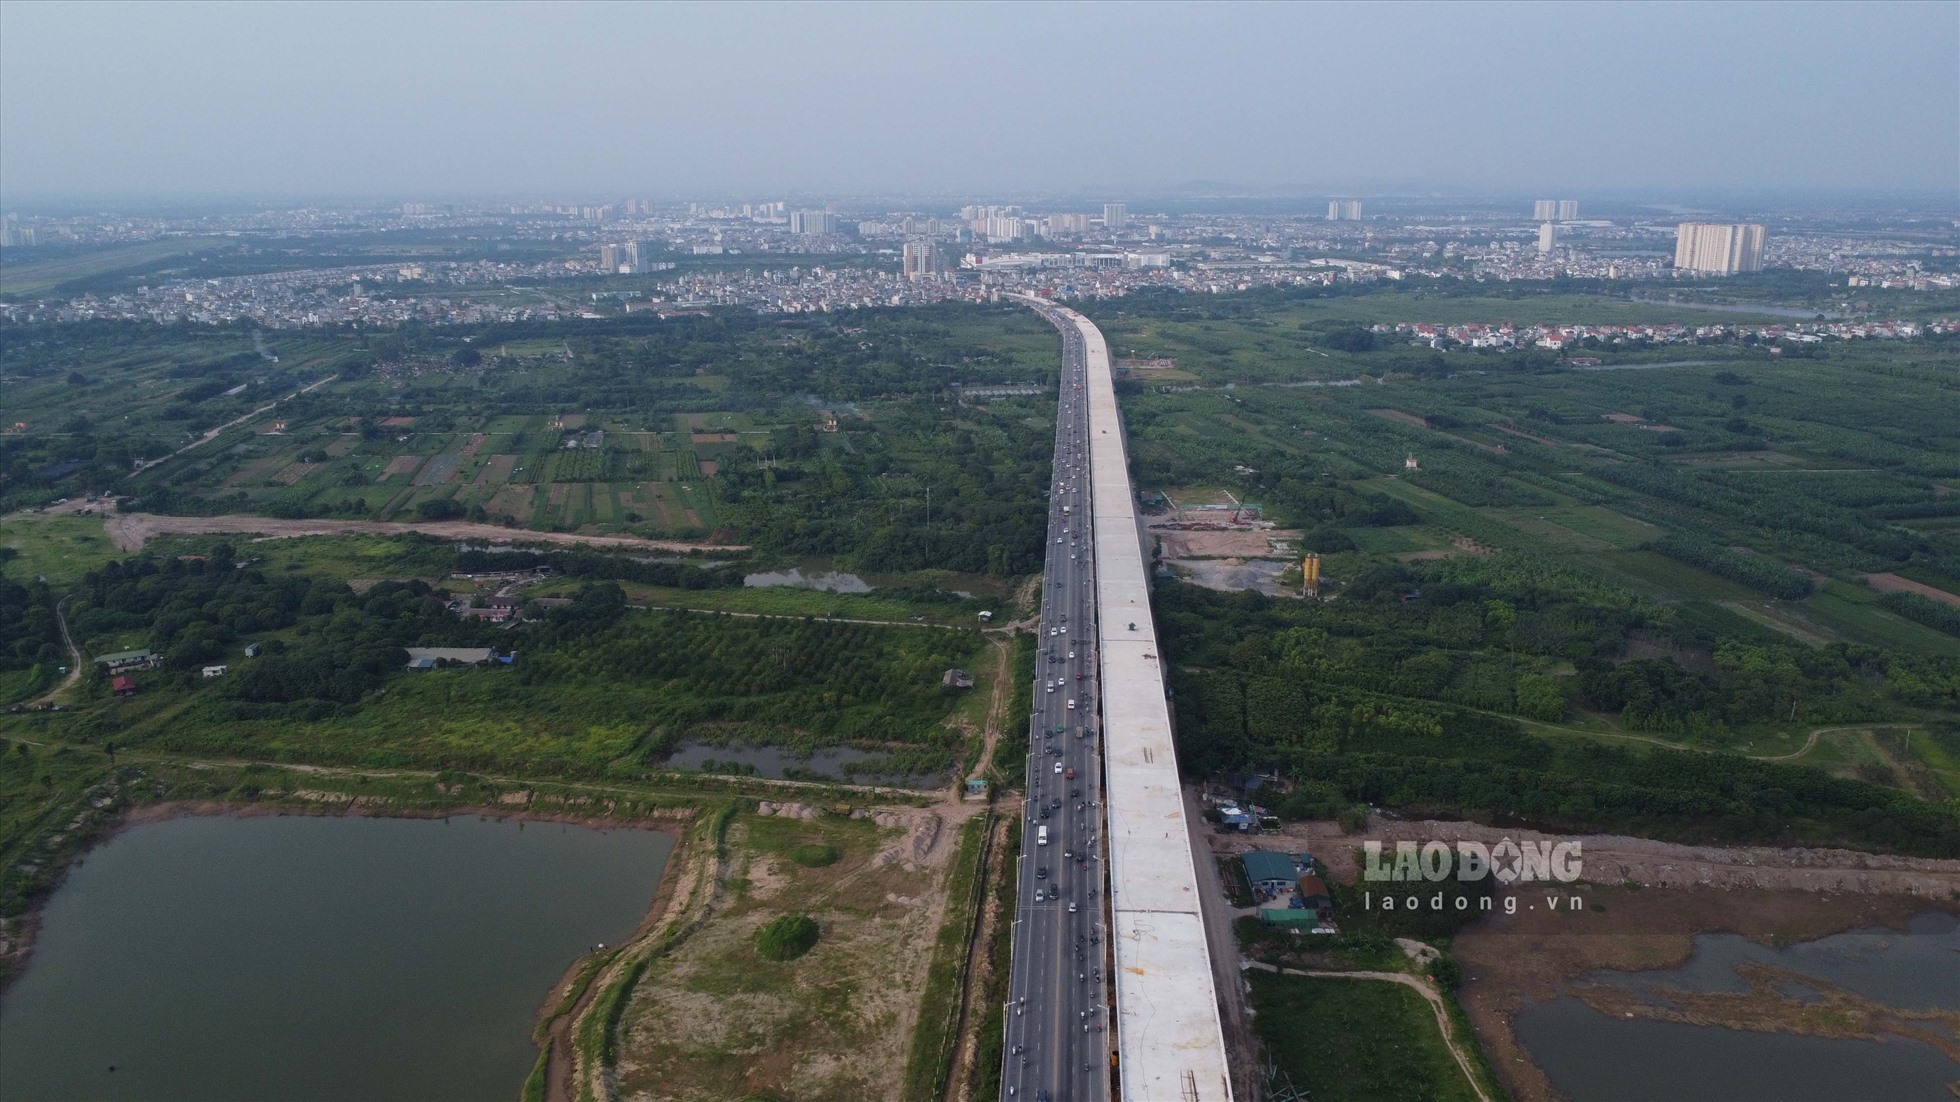 Theo báo cáo từ Ban Quản lý dự án Đầu tư xây dựng công trình giao thông thành phố Hà Nội, dự án cầu Vĩnh Tuy 2 có chiều dài tuyến (bao gồm cầu và đường dẫn) khoảng 3.473m, gồm 61 nhịp; tổng mức đầu tư 2.538 tỷ đồng từ nguồn vốn ngân sách thành phố.